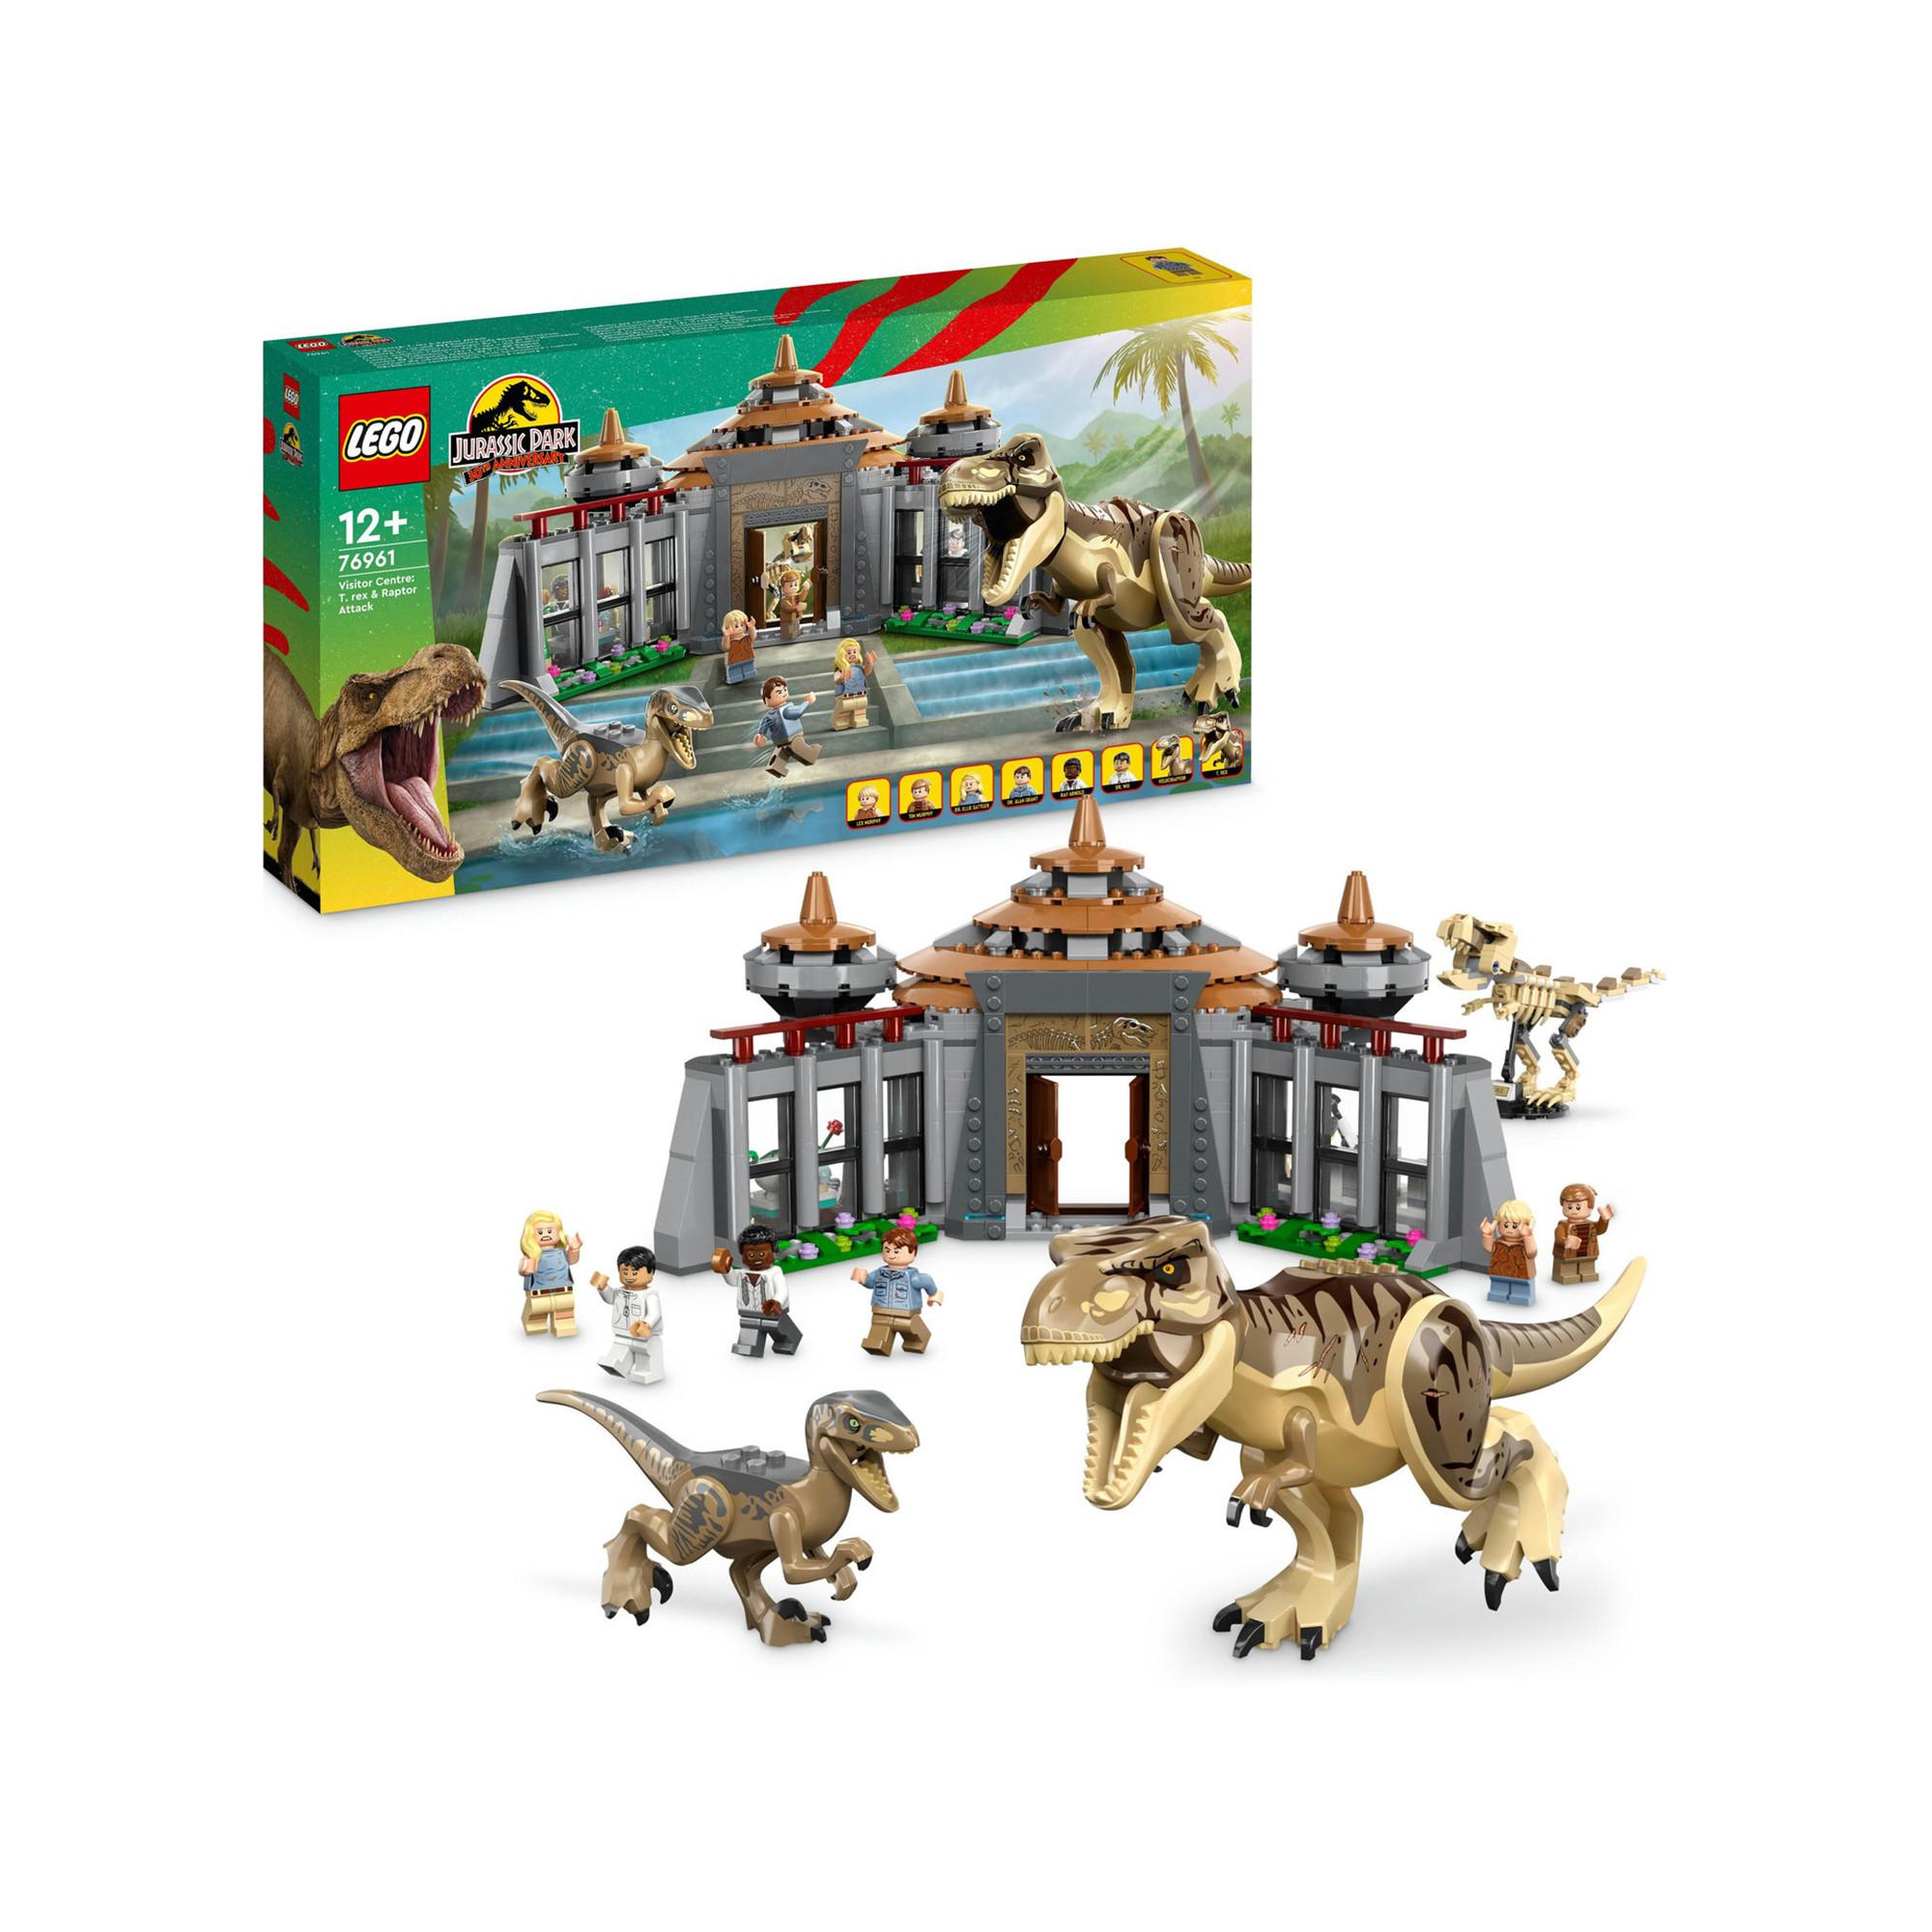 LEGO 76961 Centro visitatori: l'attacco del T. rex e del Raptor